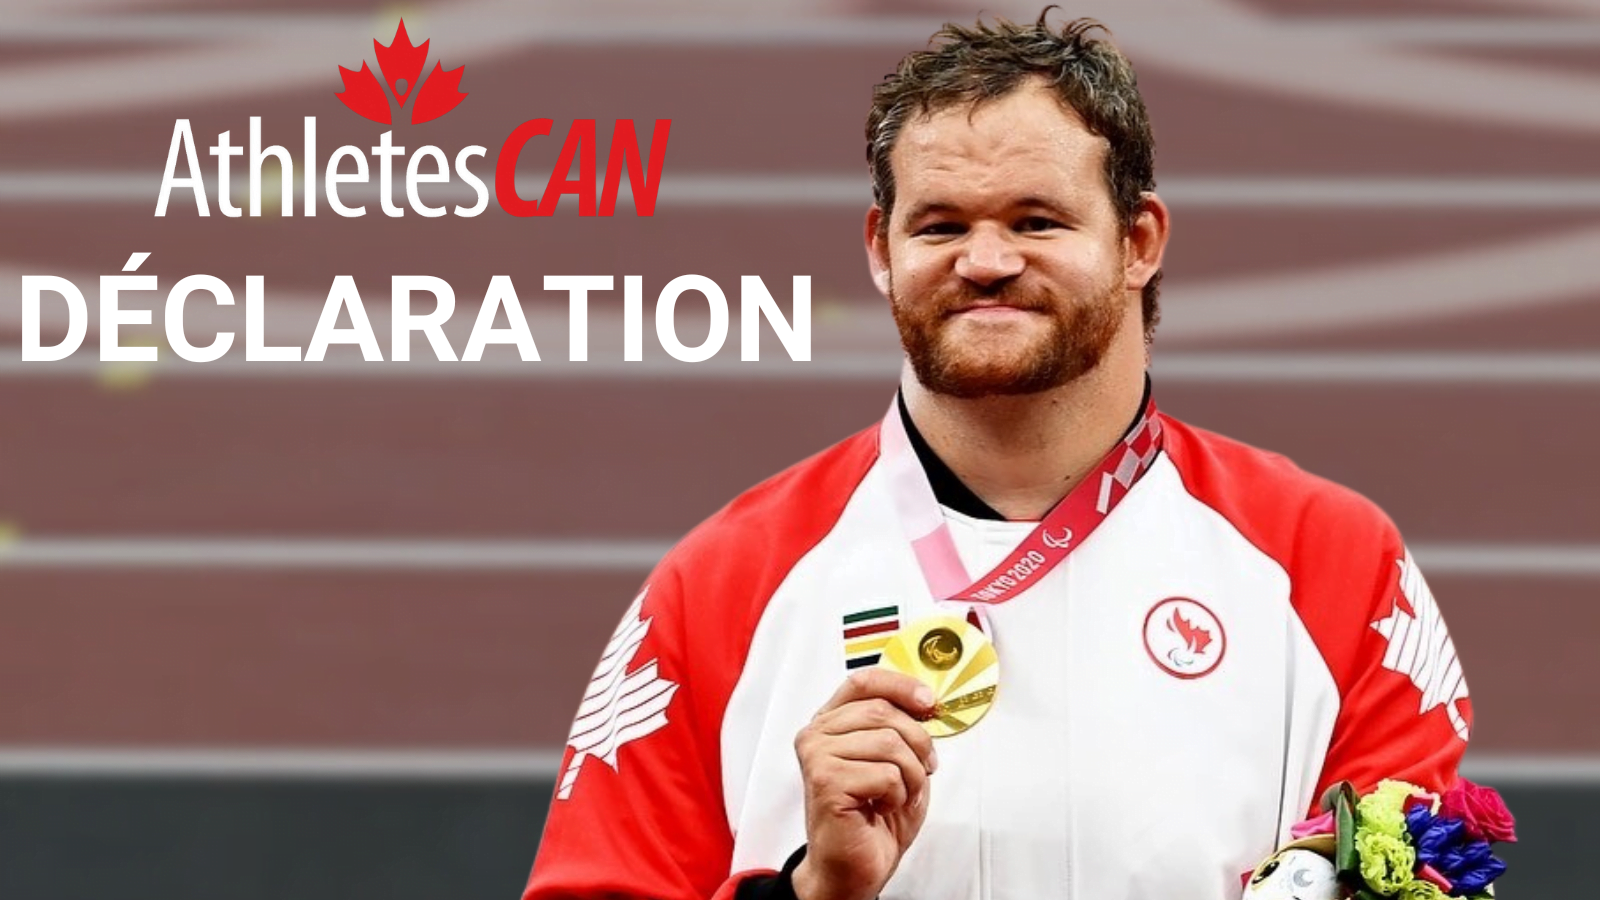 Déclaration : AthlètesCAN salue l'égalité de la reconnaissance financière pour les performances sur le podium des Canadiens aux Jeux paralympiques